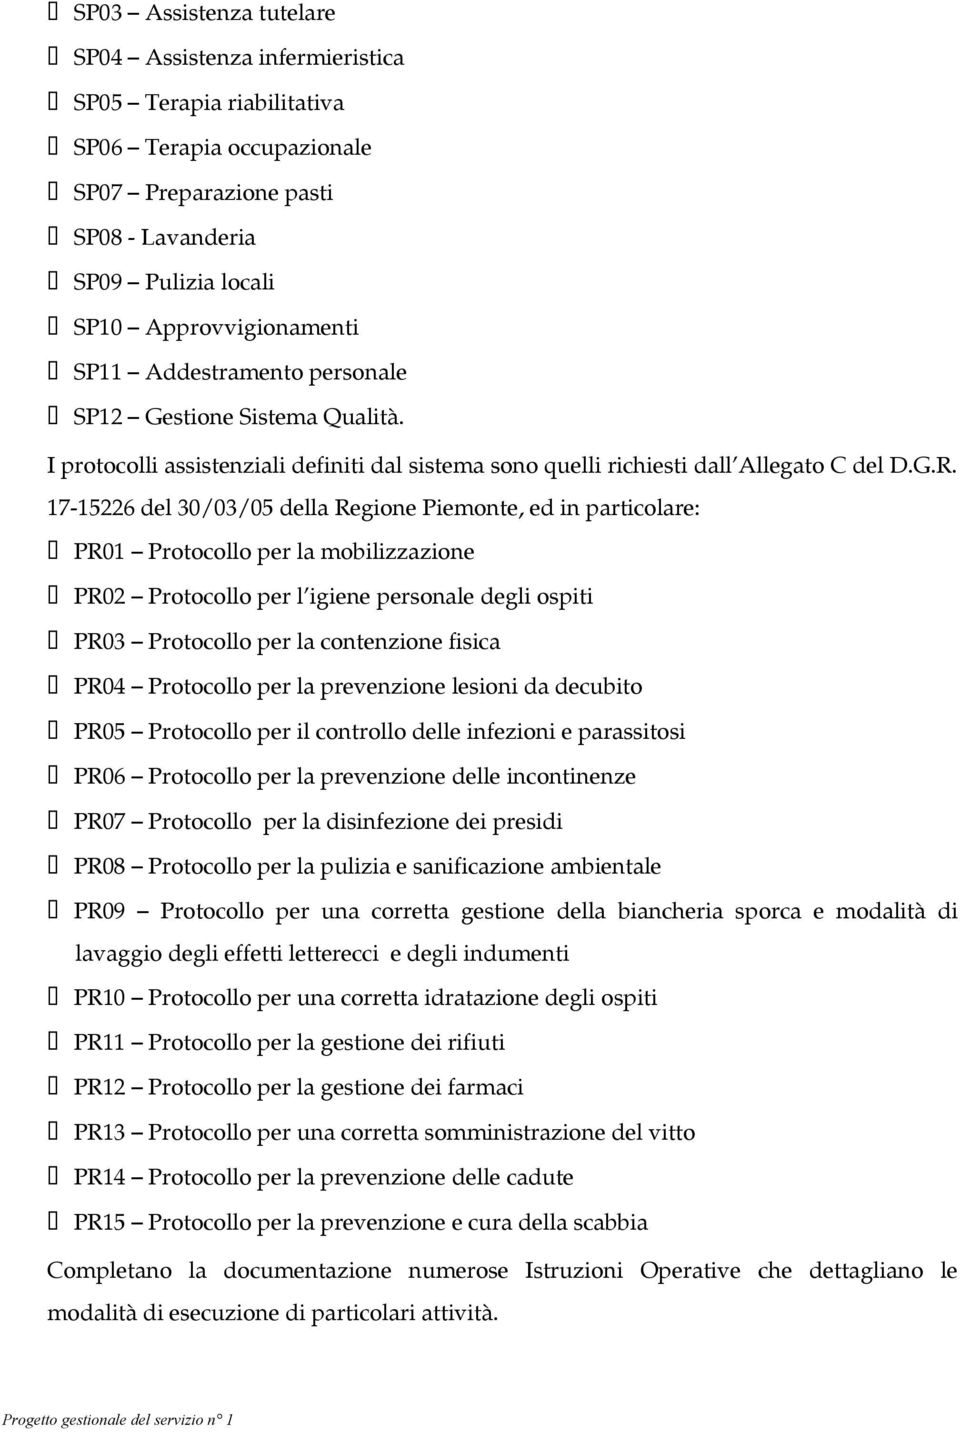 17-15226 del 30/03/05 della Regione Piemonte, ed in particolare: PR01 Protocollo per la mobilizzazione PR02 Protocollo per l igiene personale degli ospiti PR03 Protocollo per la contenzione fisica